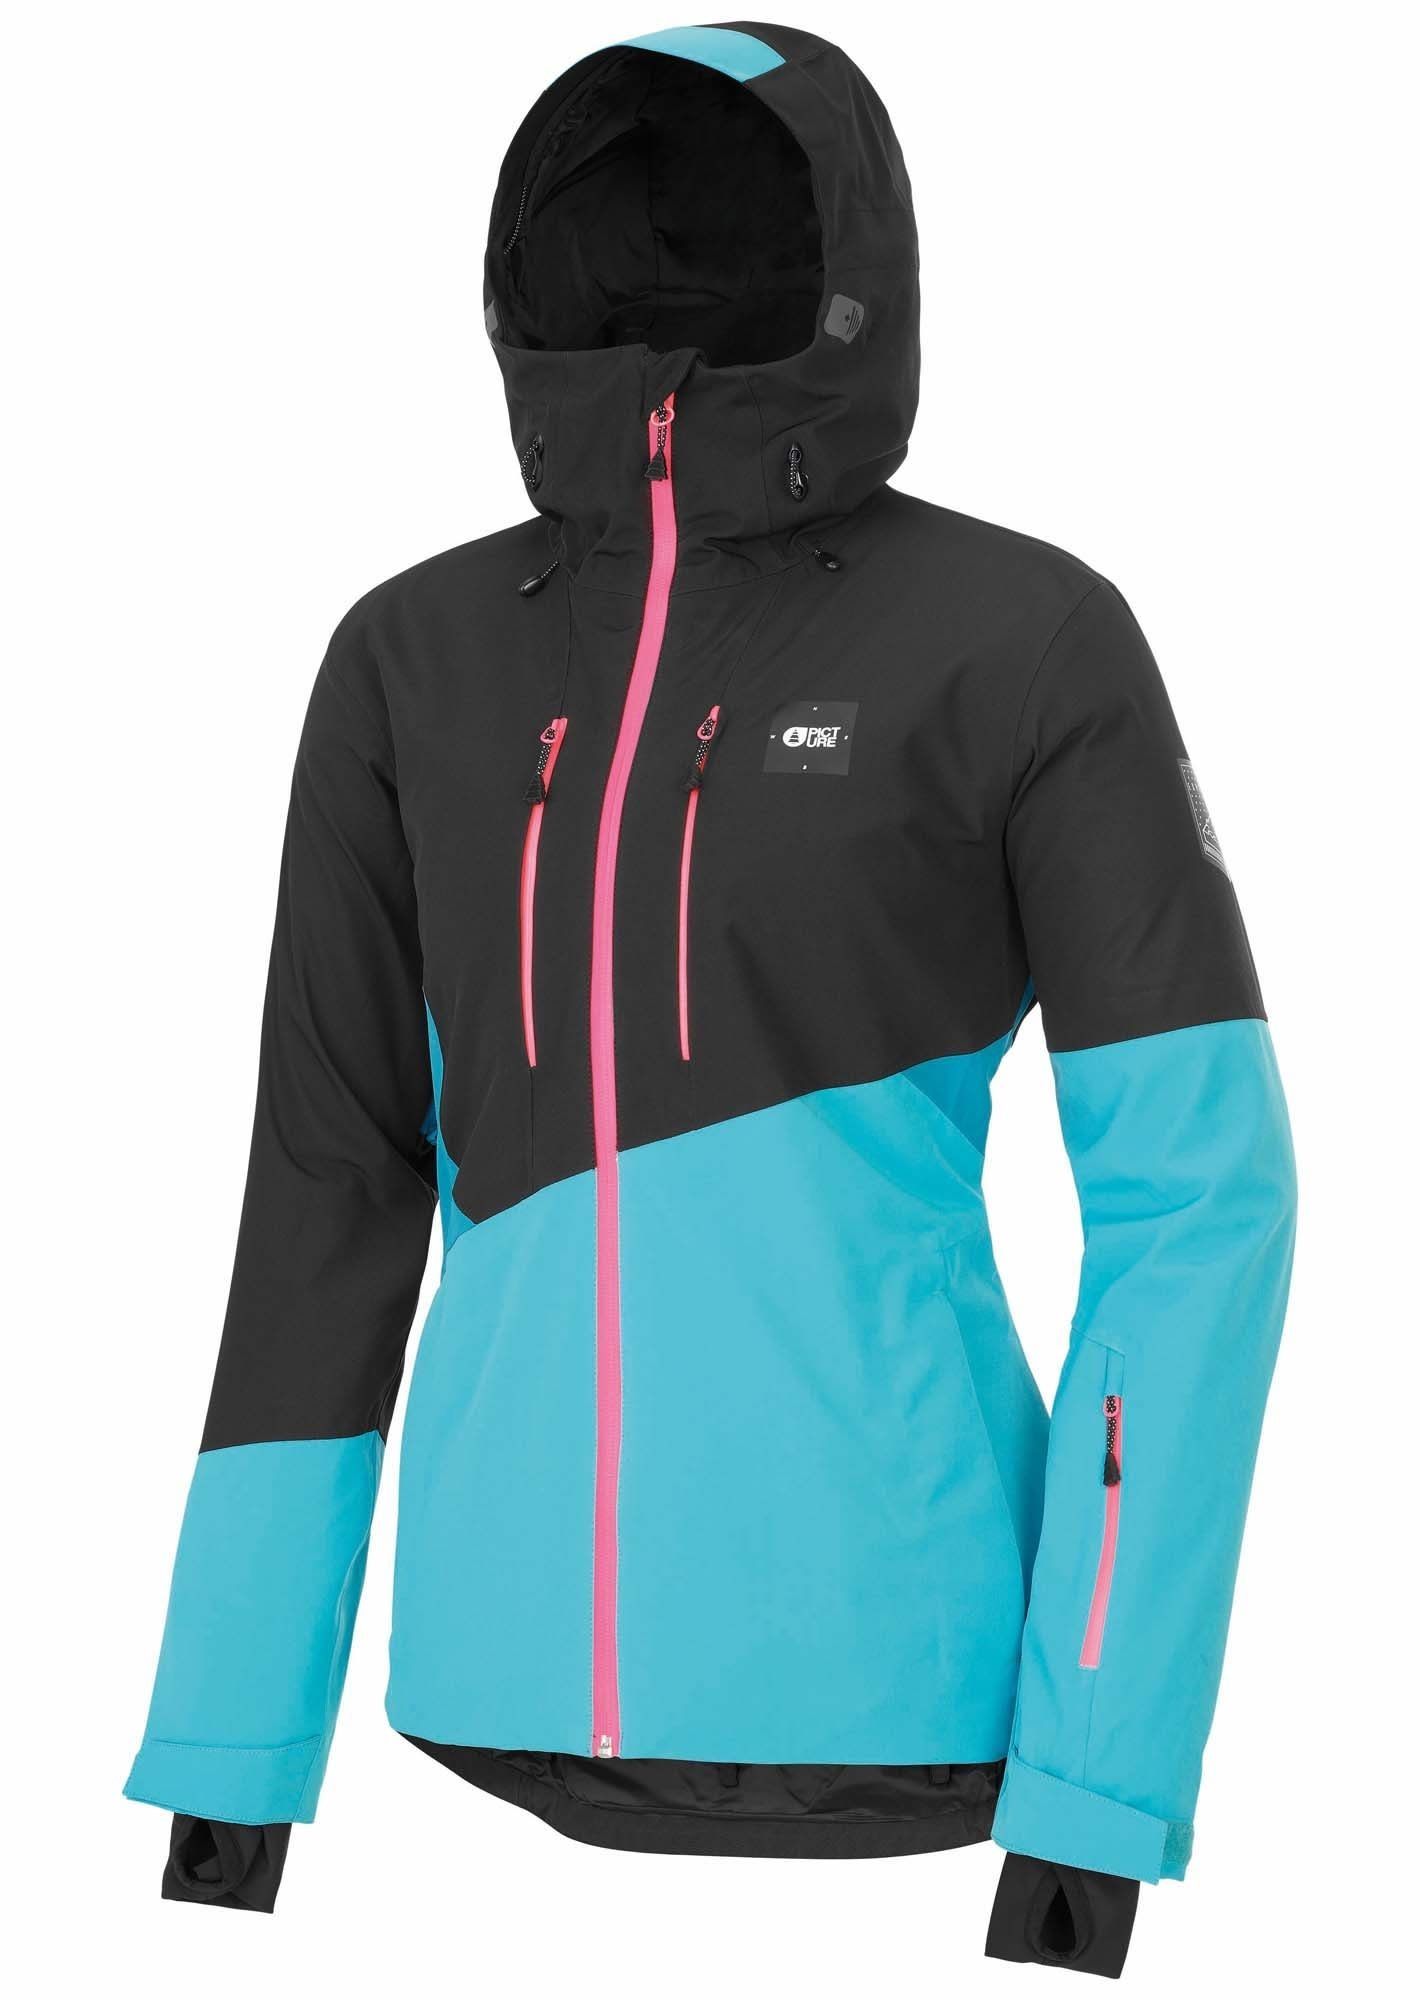 Damen Ski- Picture W Seen Light Picture Blue Skijacke (vorgängermodell) Jacket